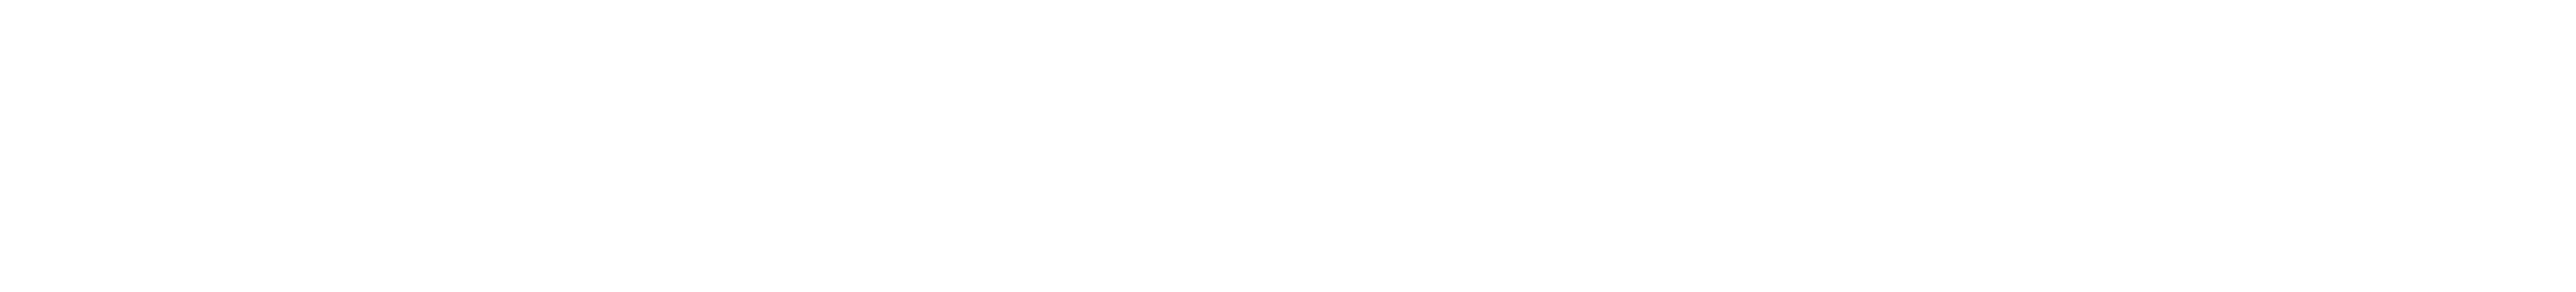 ThermoNoord logo